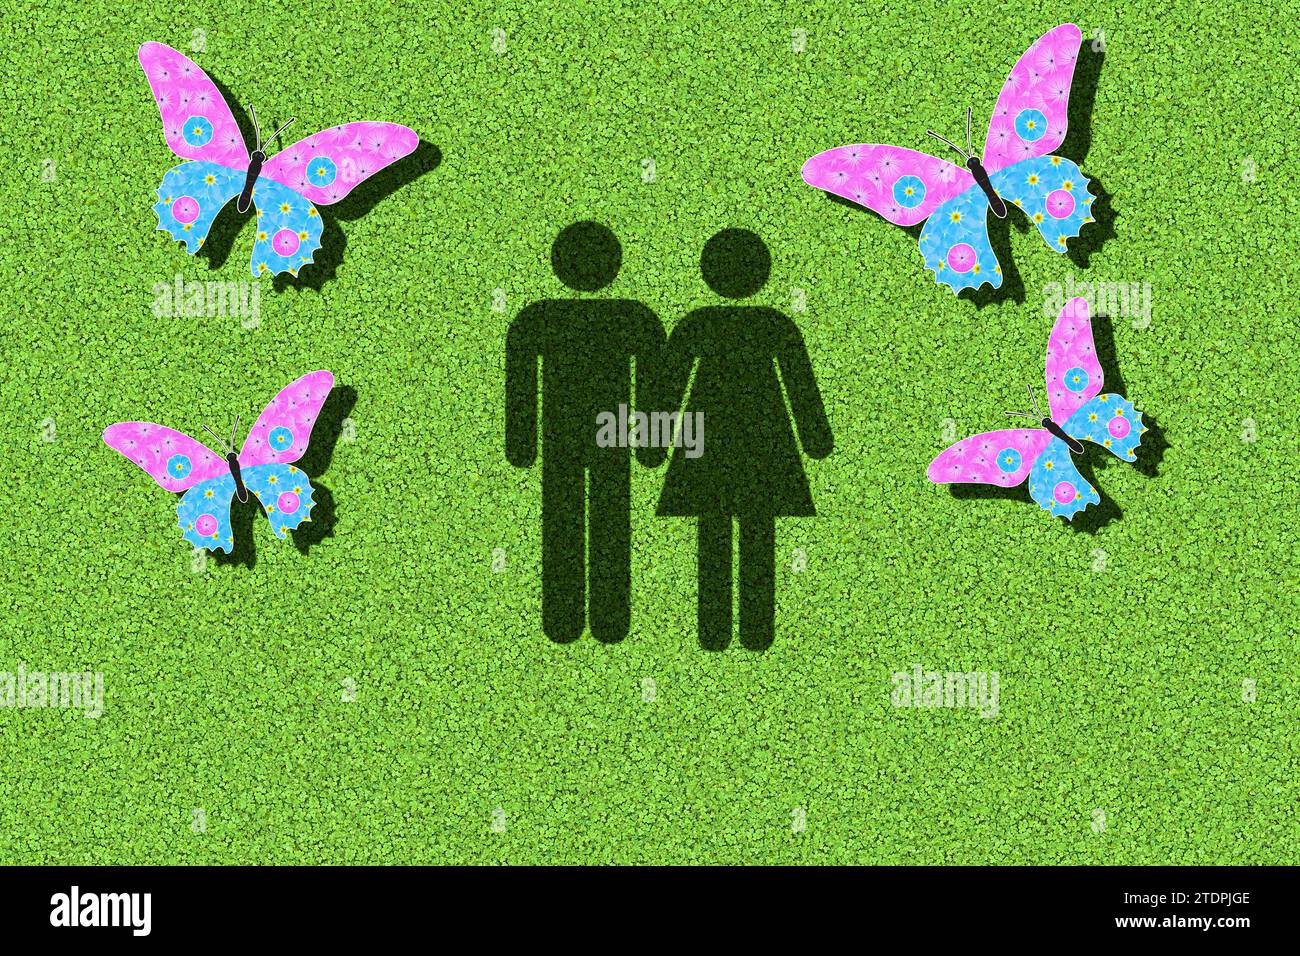 Pictogramme d'un couple avec des papillons dans le ventre, graphique avec des fleurs roses et bleu clair sur fond vert Banque D'Images